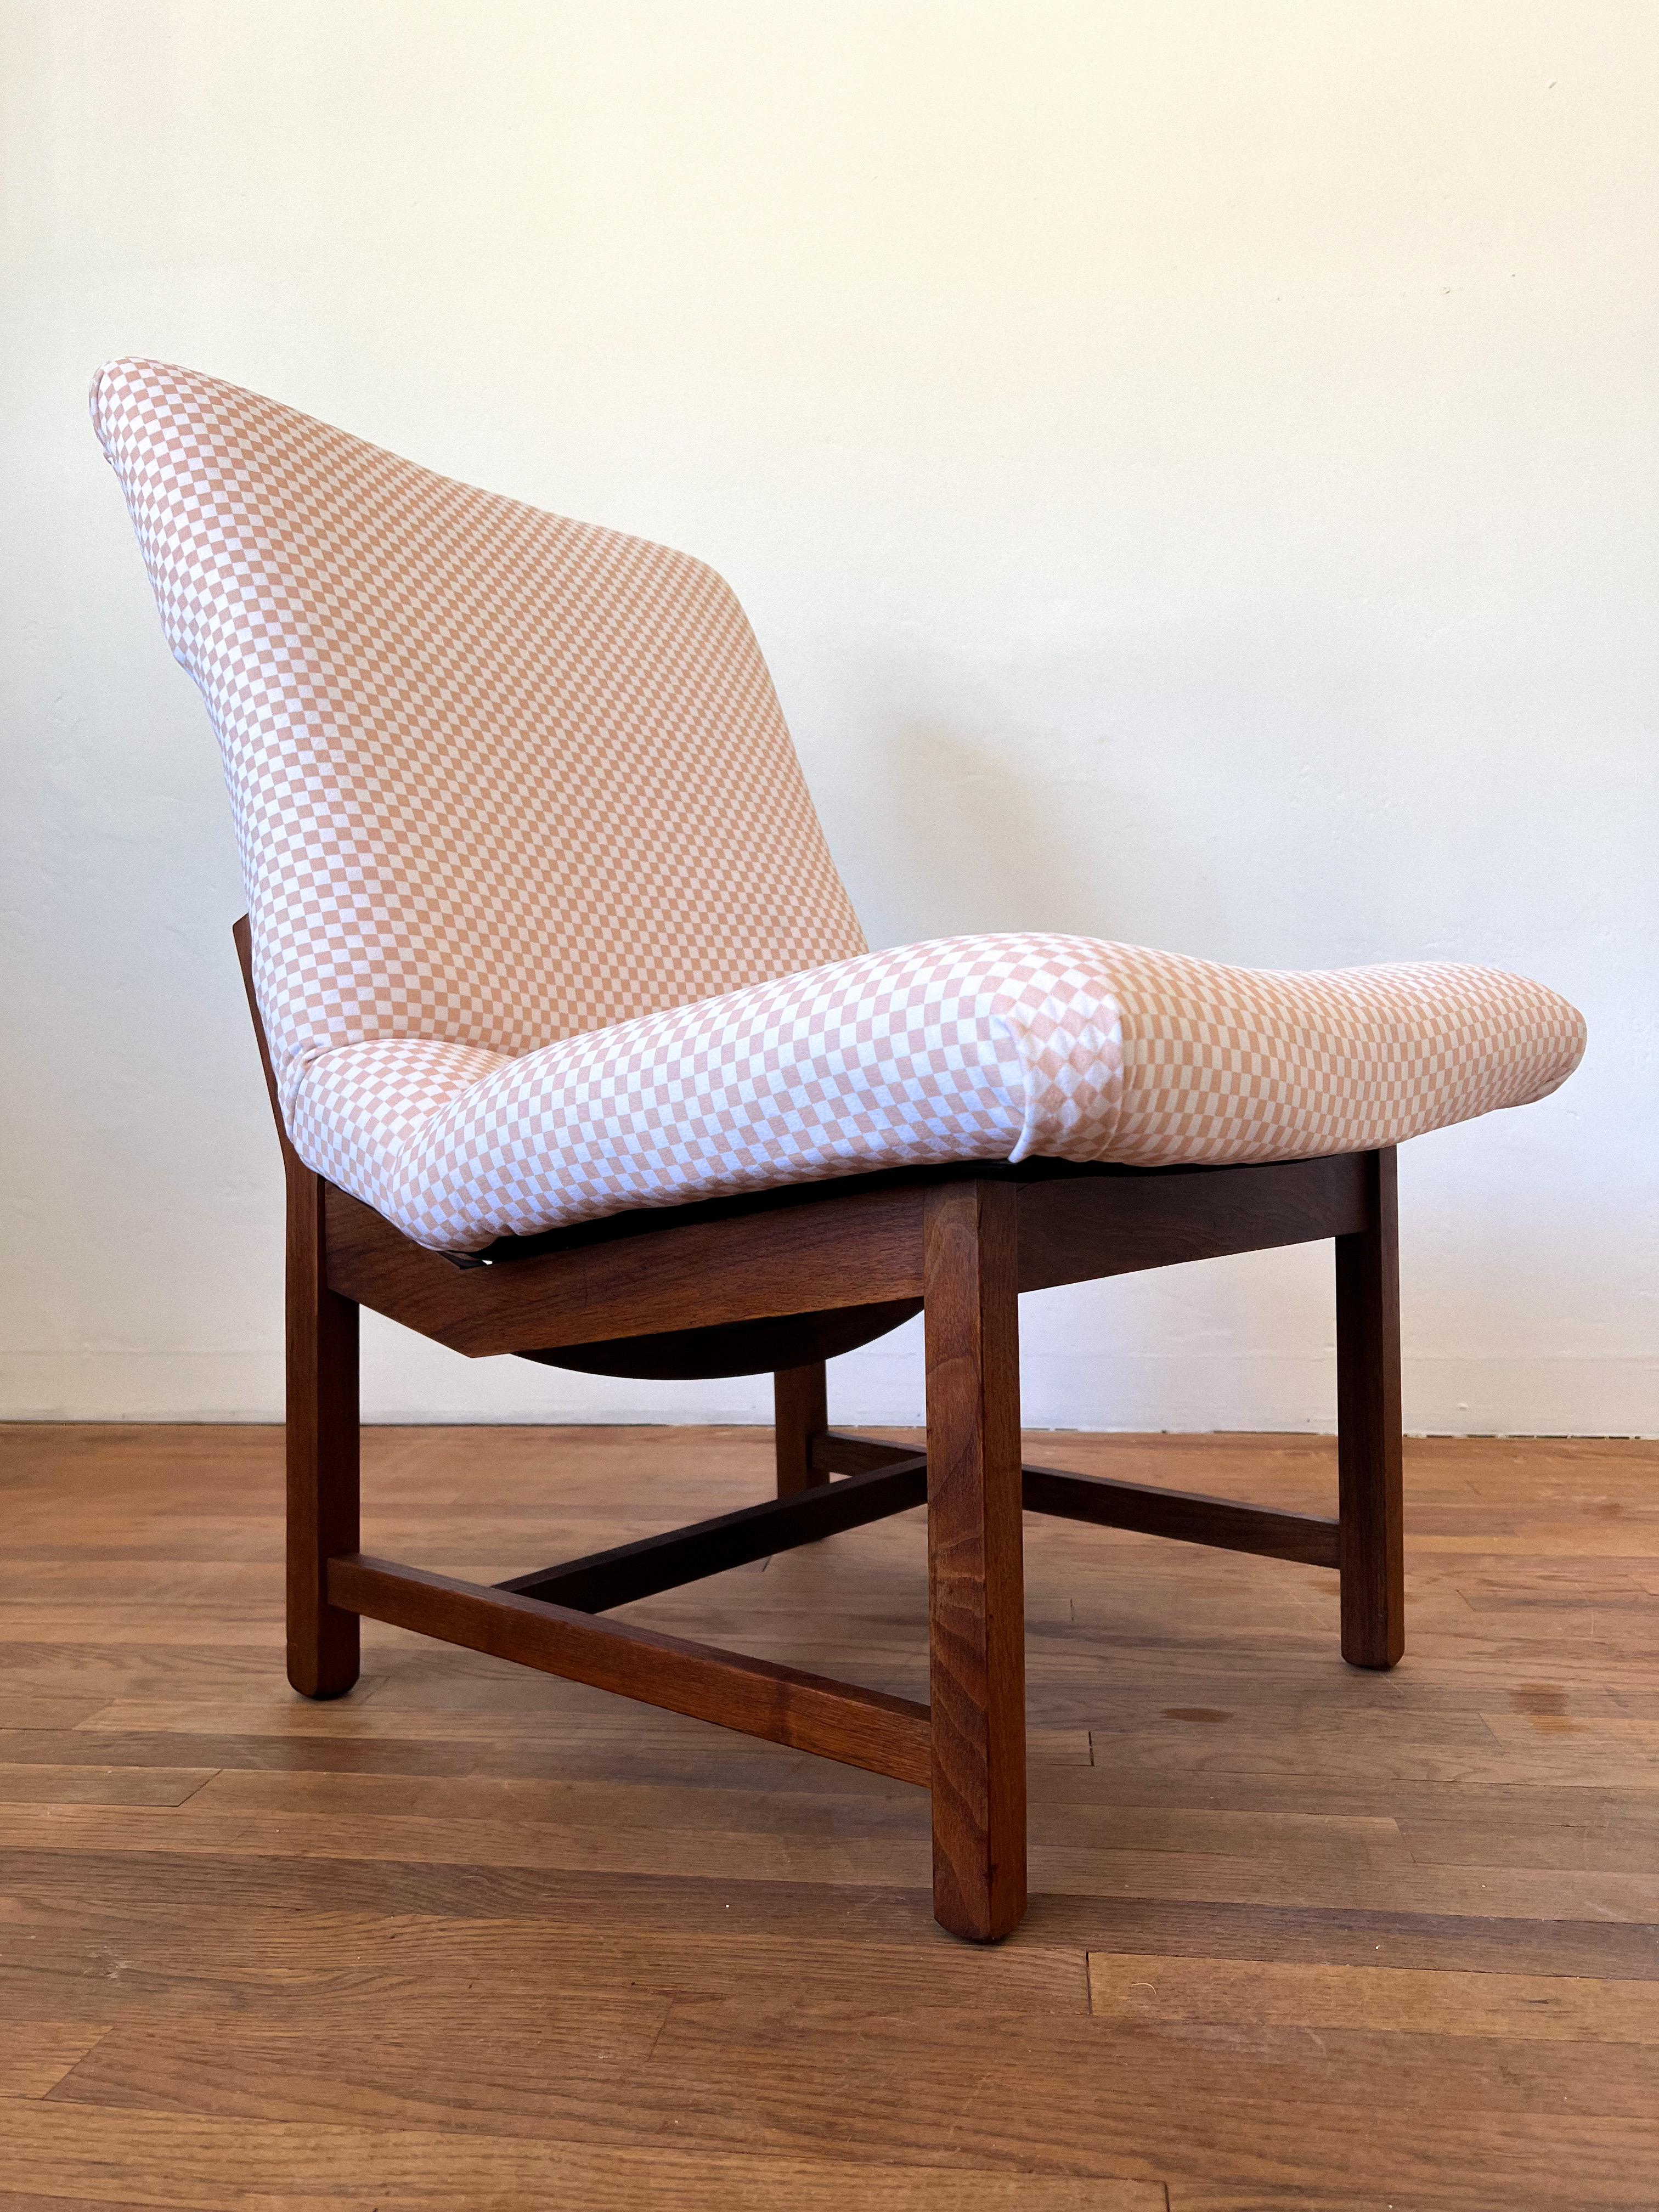 Mid Century Modern Slipper Lounge Chair im Stil von Jens Risom. Neu gepolstert mit einem weiß/cremefarbenen Karostoff. Einer der bequemsten Stühle, auf denen Sie jemals sitzen werden. Der Stoff ist sehr weich und von hoher Qualität. Die Risom-Linien